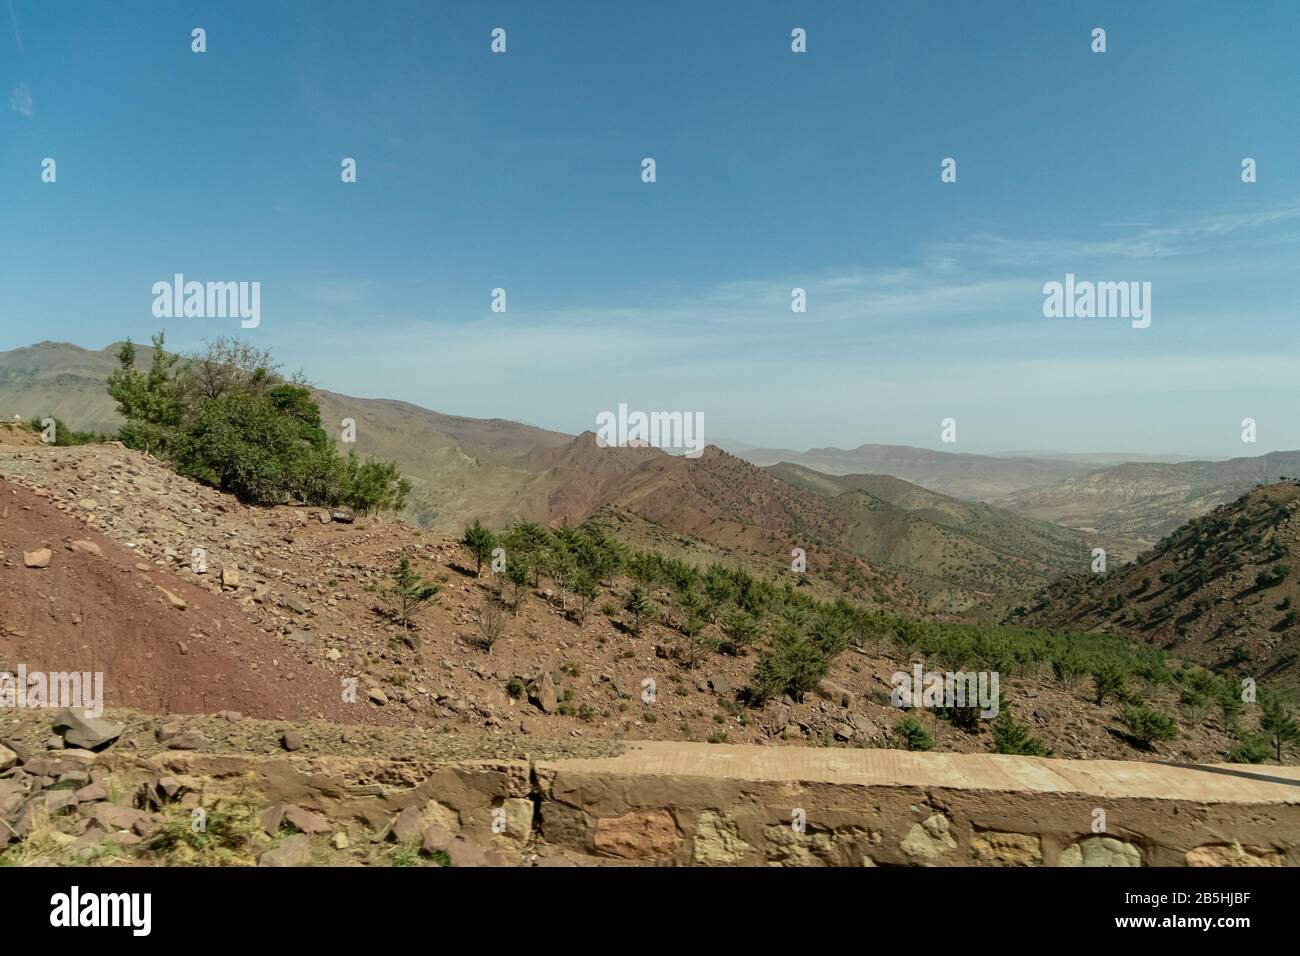 Paesaggio arido dell'alto atlante in Marocco Foto Stock